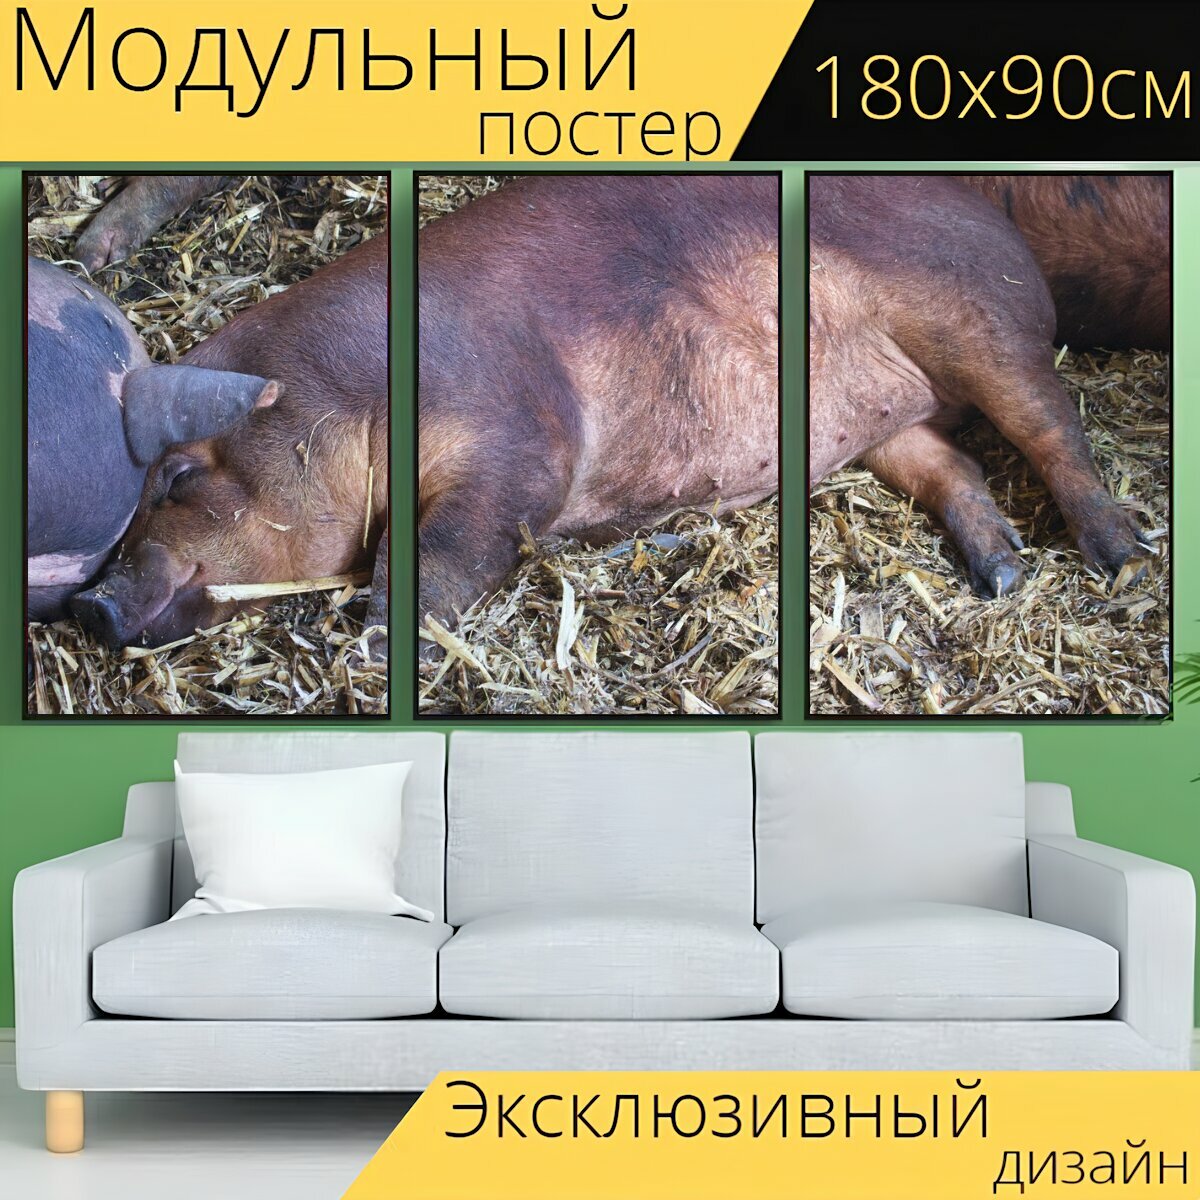 Модульный постер "Свинья, спать, сарай" 180 x 90 см. для интерьера